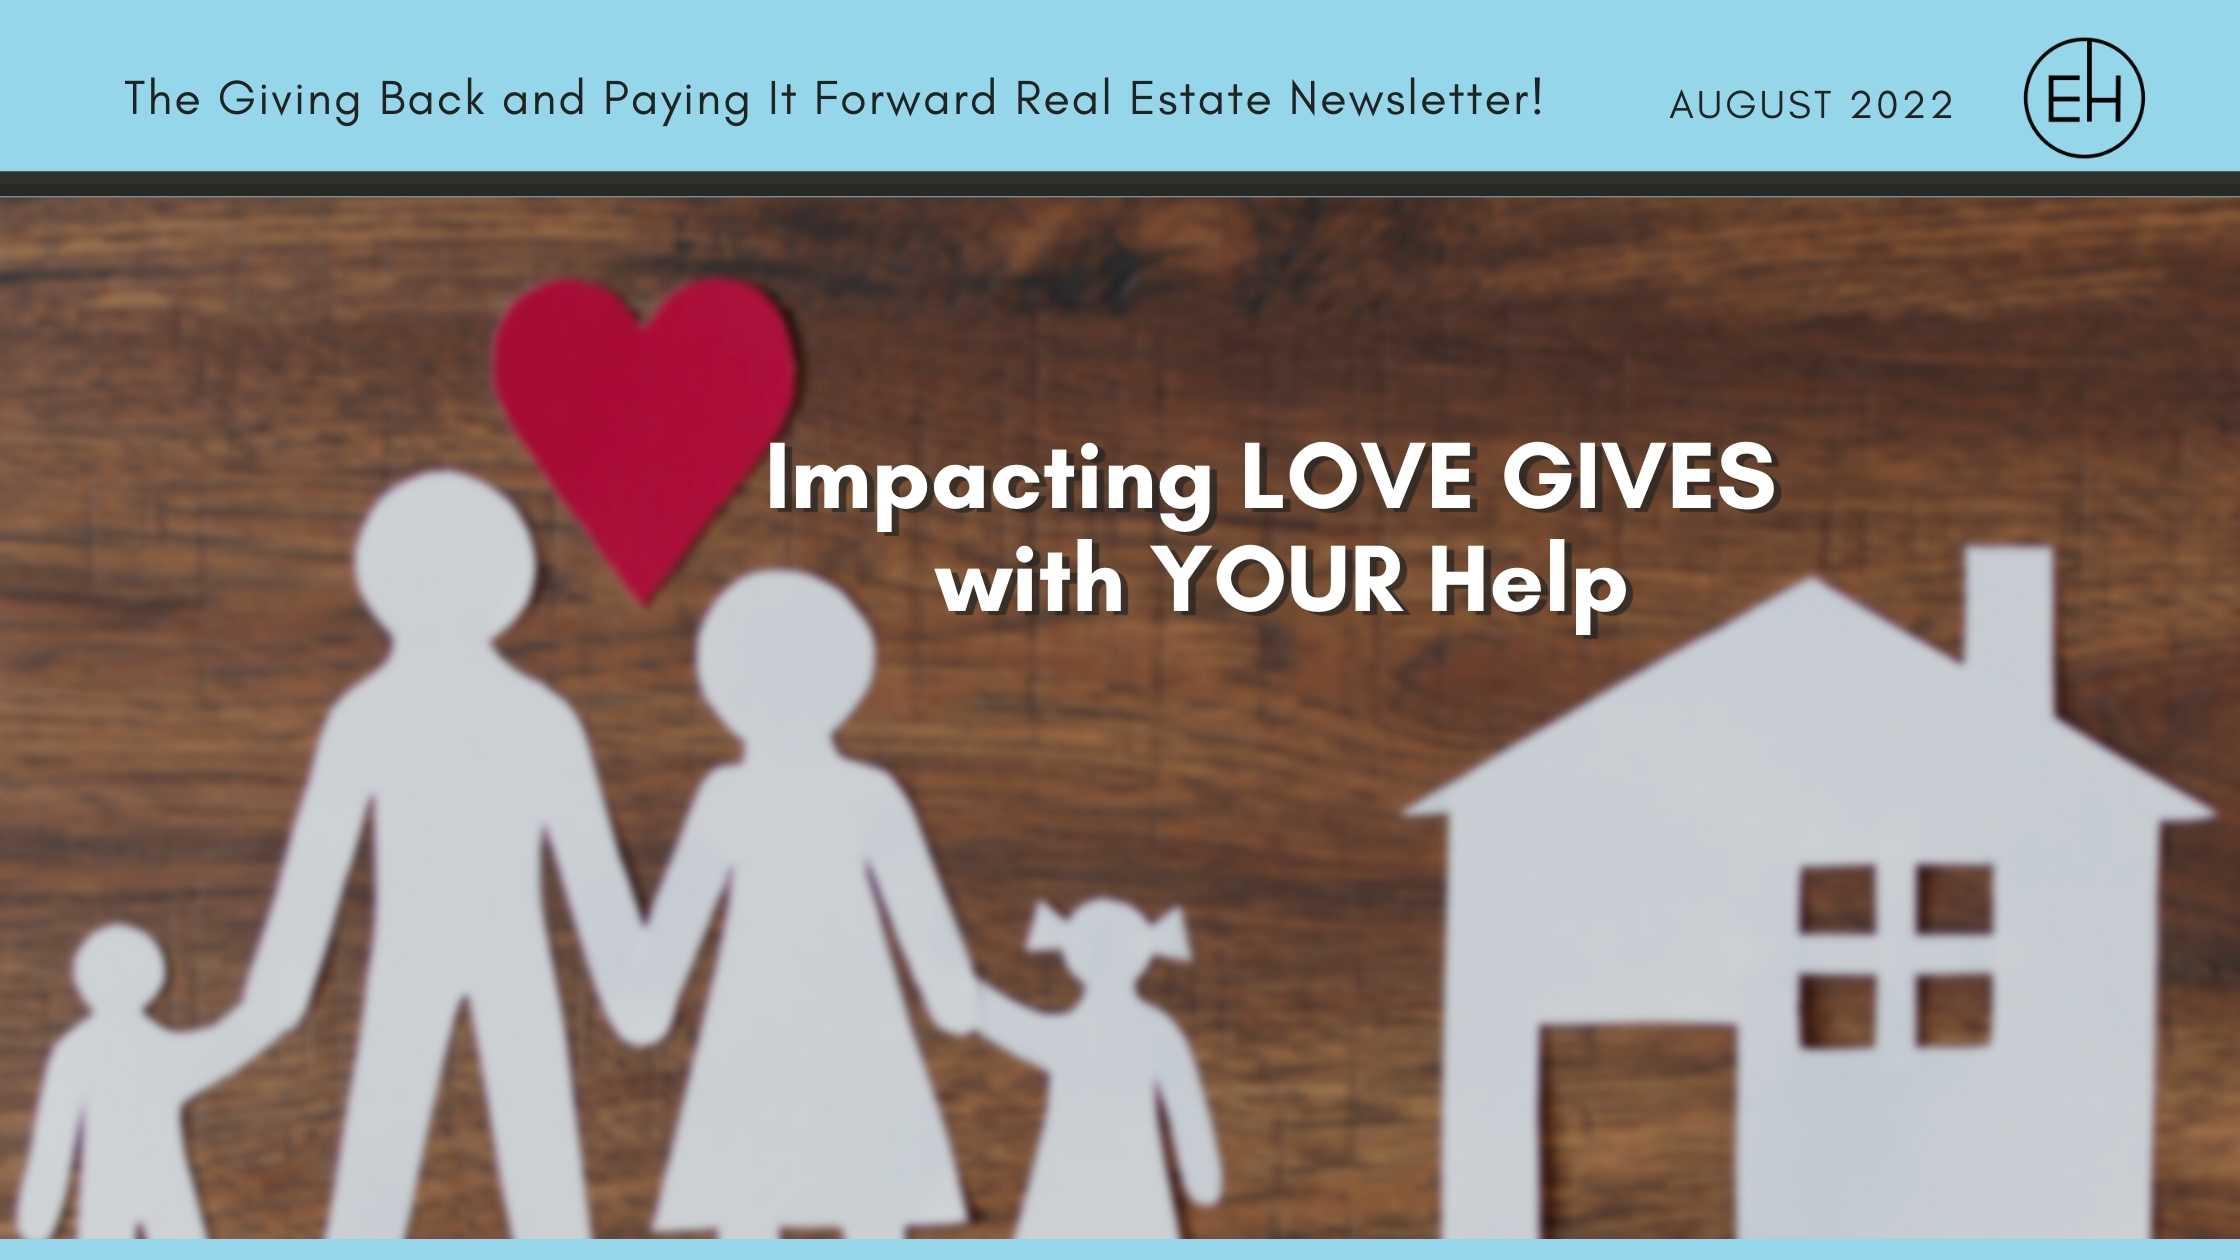 EmpowerHome Team Charleston’s Homeward Bound Impactful Real Estate News